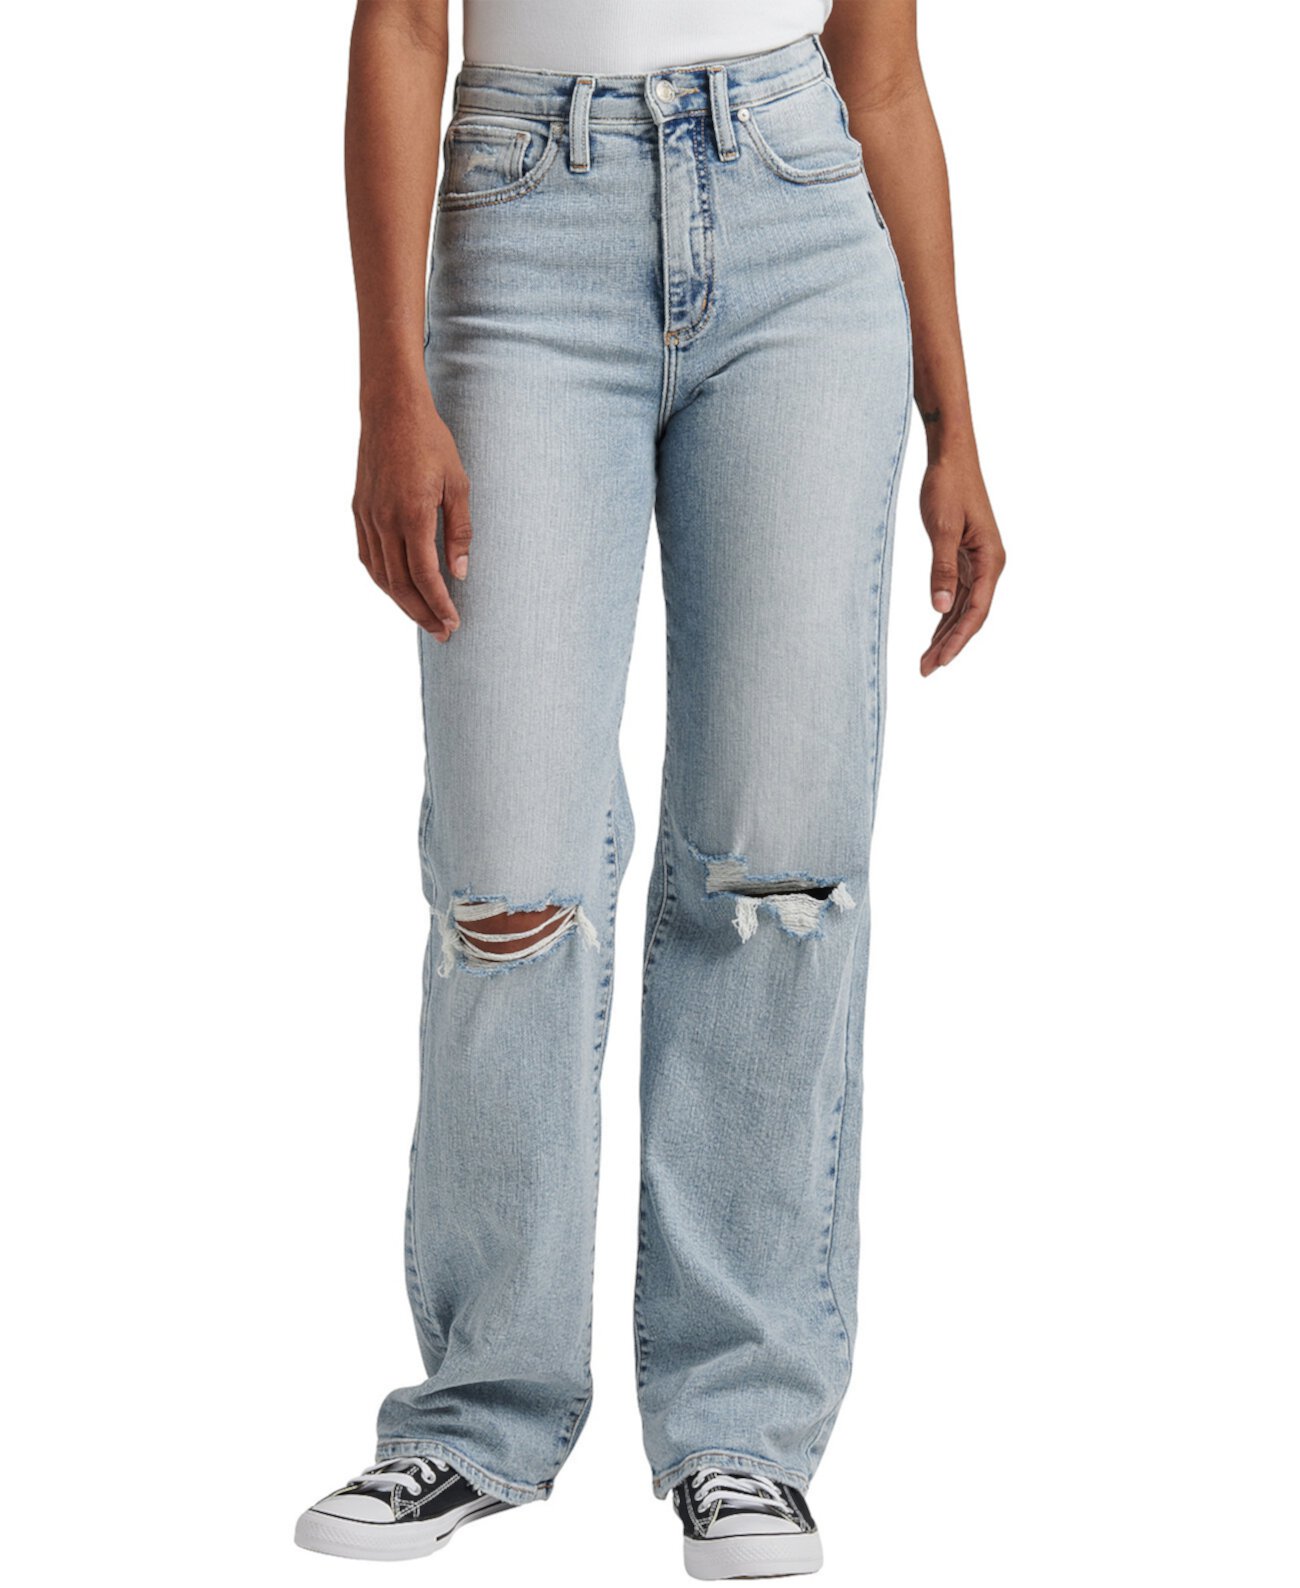 Очень желанные женские джинсы с высокой посадкой и штанинами Silver Jeans Co.